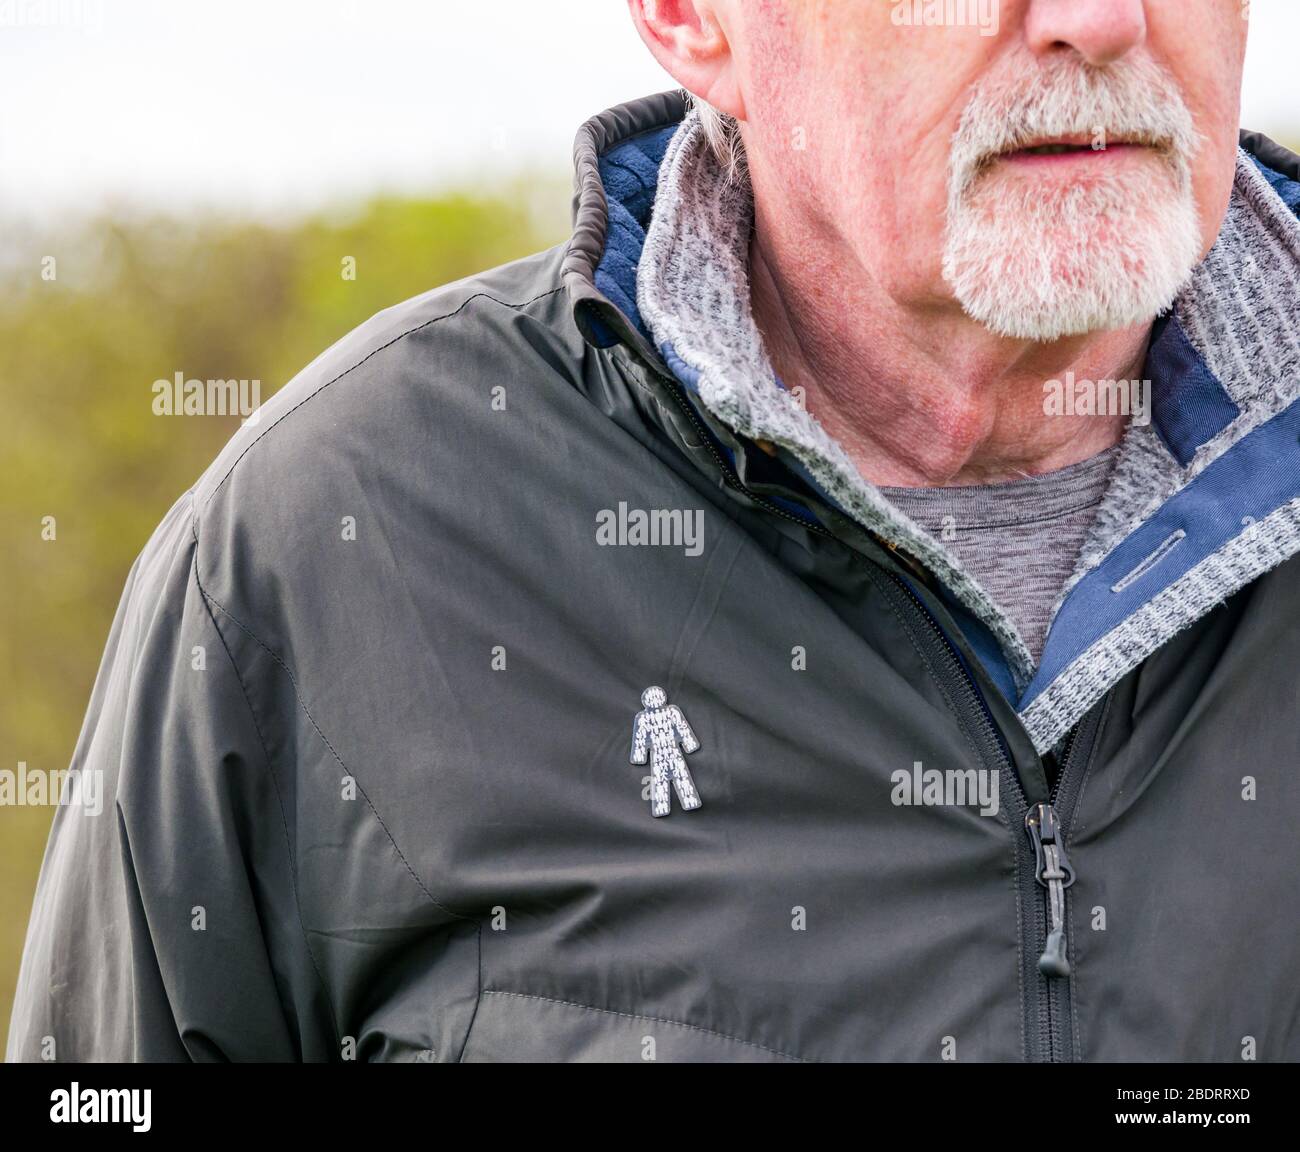 Homme senior avec barbe grise portant un badge caritatif Prostate Cancer UK épinglé à la veste pour sensibiliser le public à l'état de santé commun, Royaume-Uni Banque D'Images